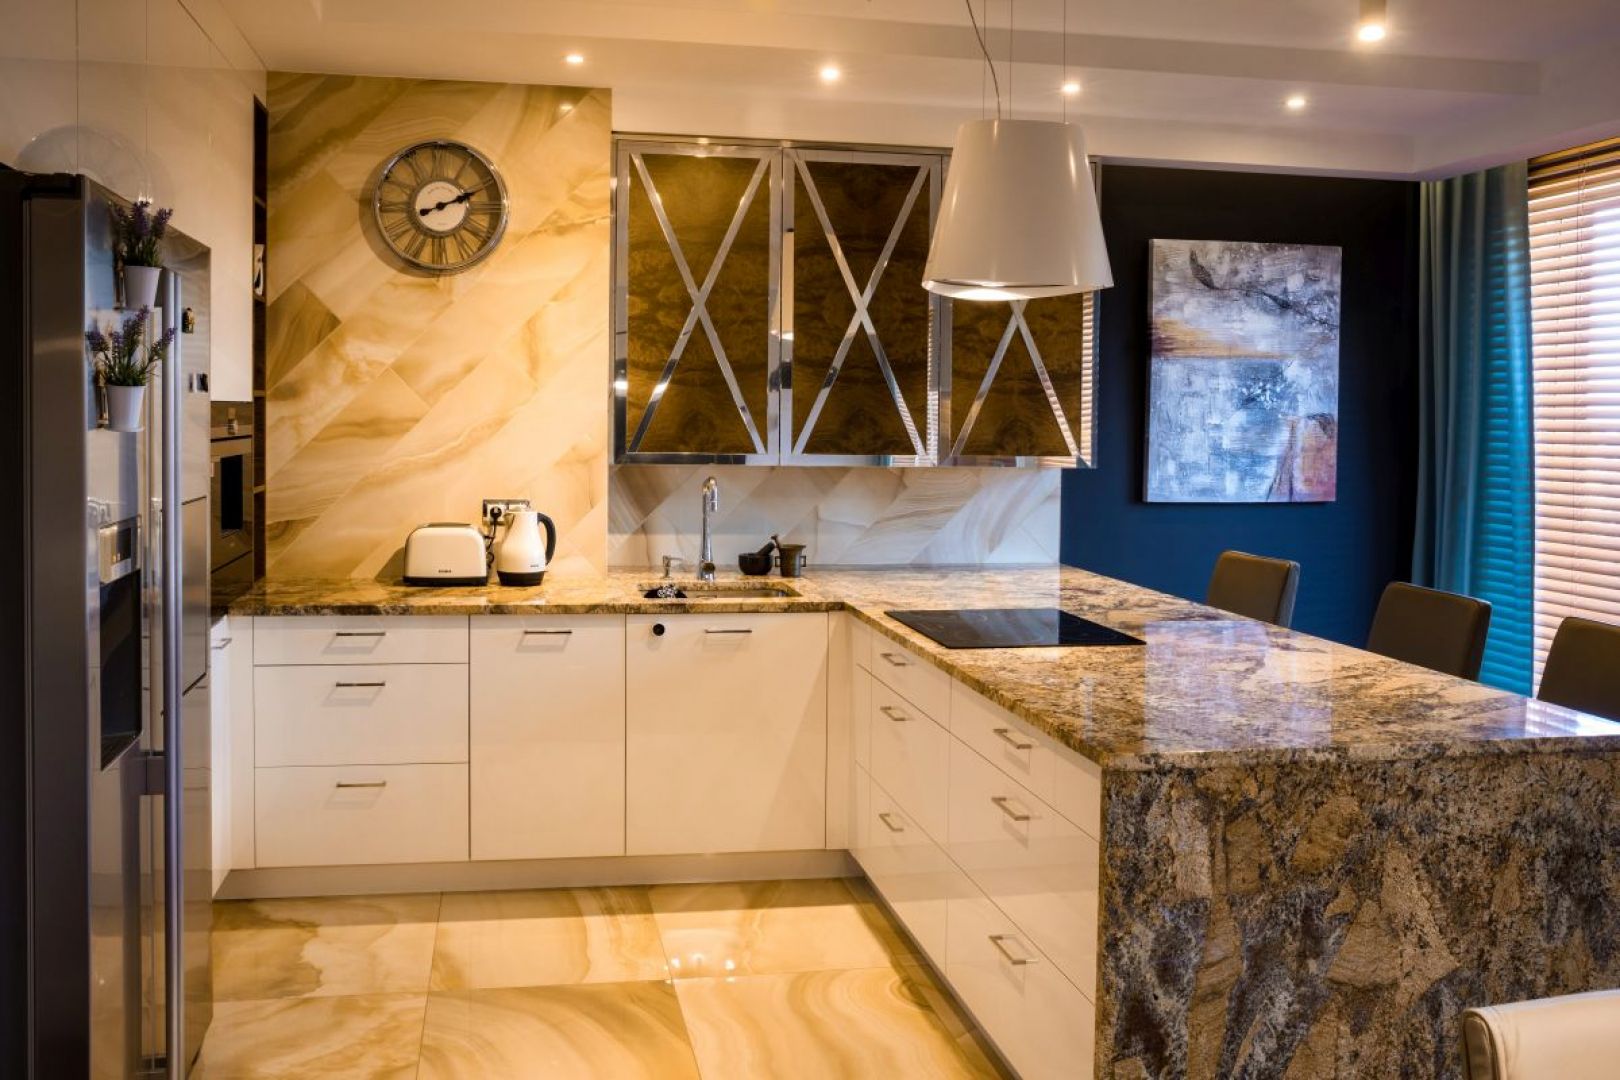 Mieszkanie zaprojektowane przez Viva Design W prostej, białej zabudowie kuchennej wykonanej przez stolarza pojawiły się szafki z dekoracyjnym fornirem zdobionym chromowanymi listwami.